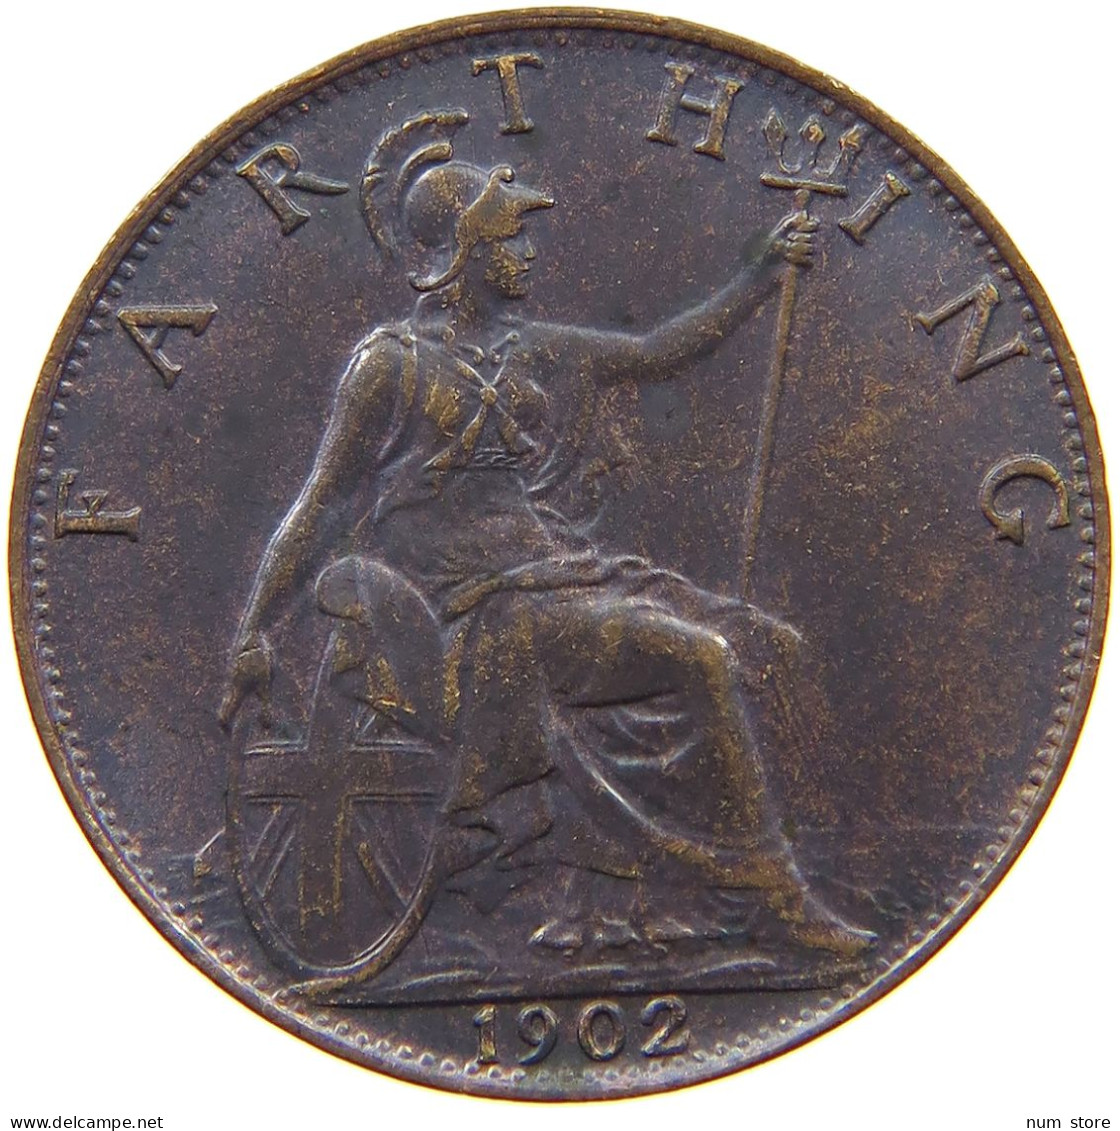 GREAT BRITAIN FARTHING 1902 Edward VII., 1901 - 1910 #s055 0121 - B. 1 Farthing